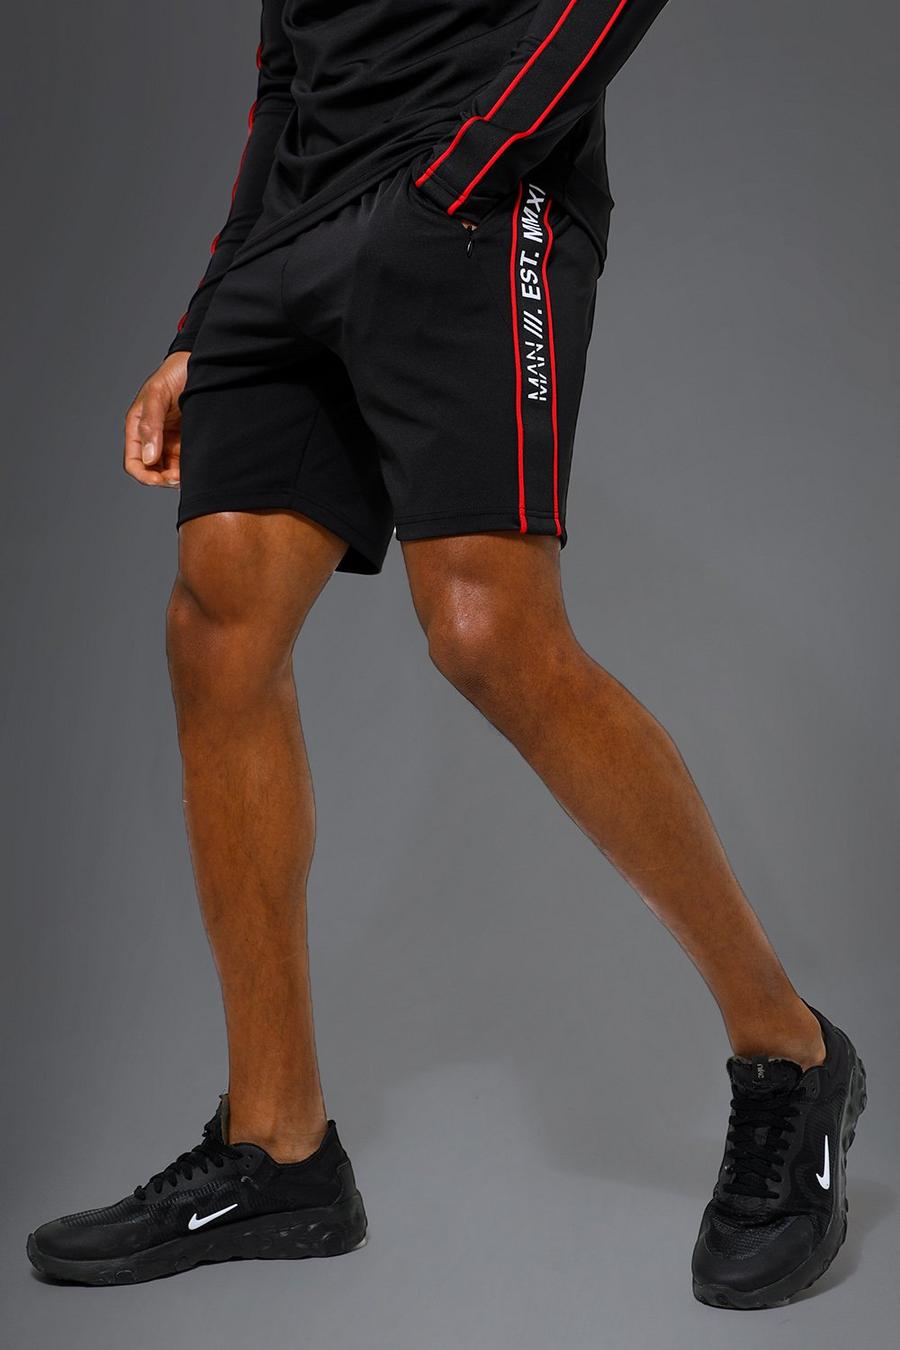 Pantalón corto MAN Active deportivo para el gimnasio con raya, Black nero